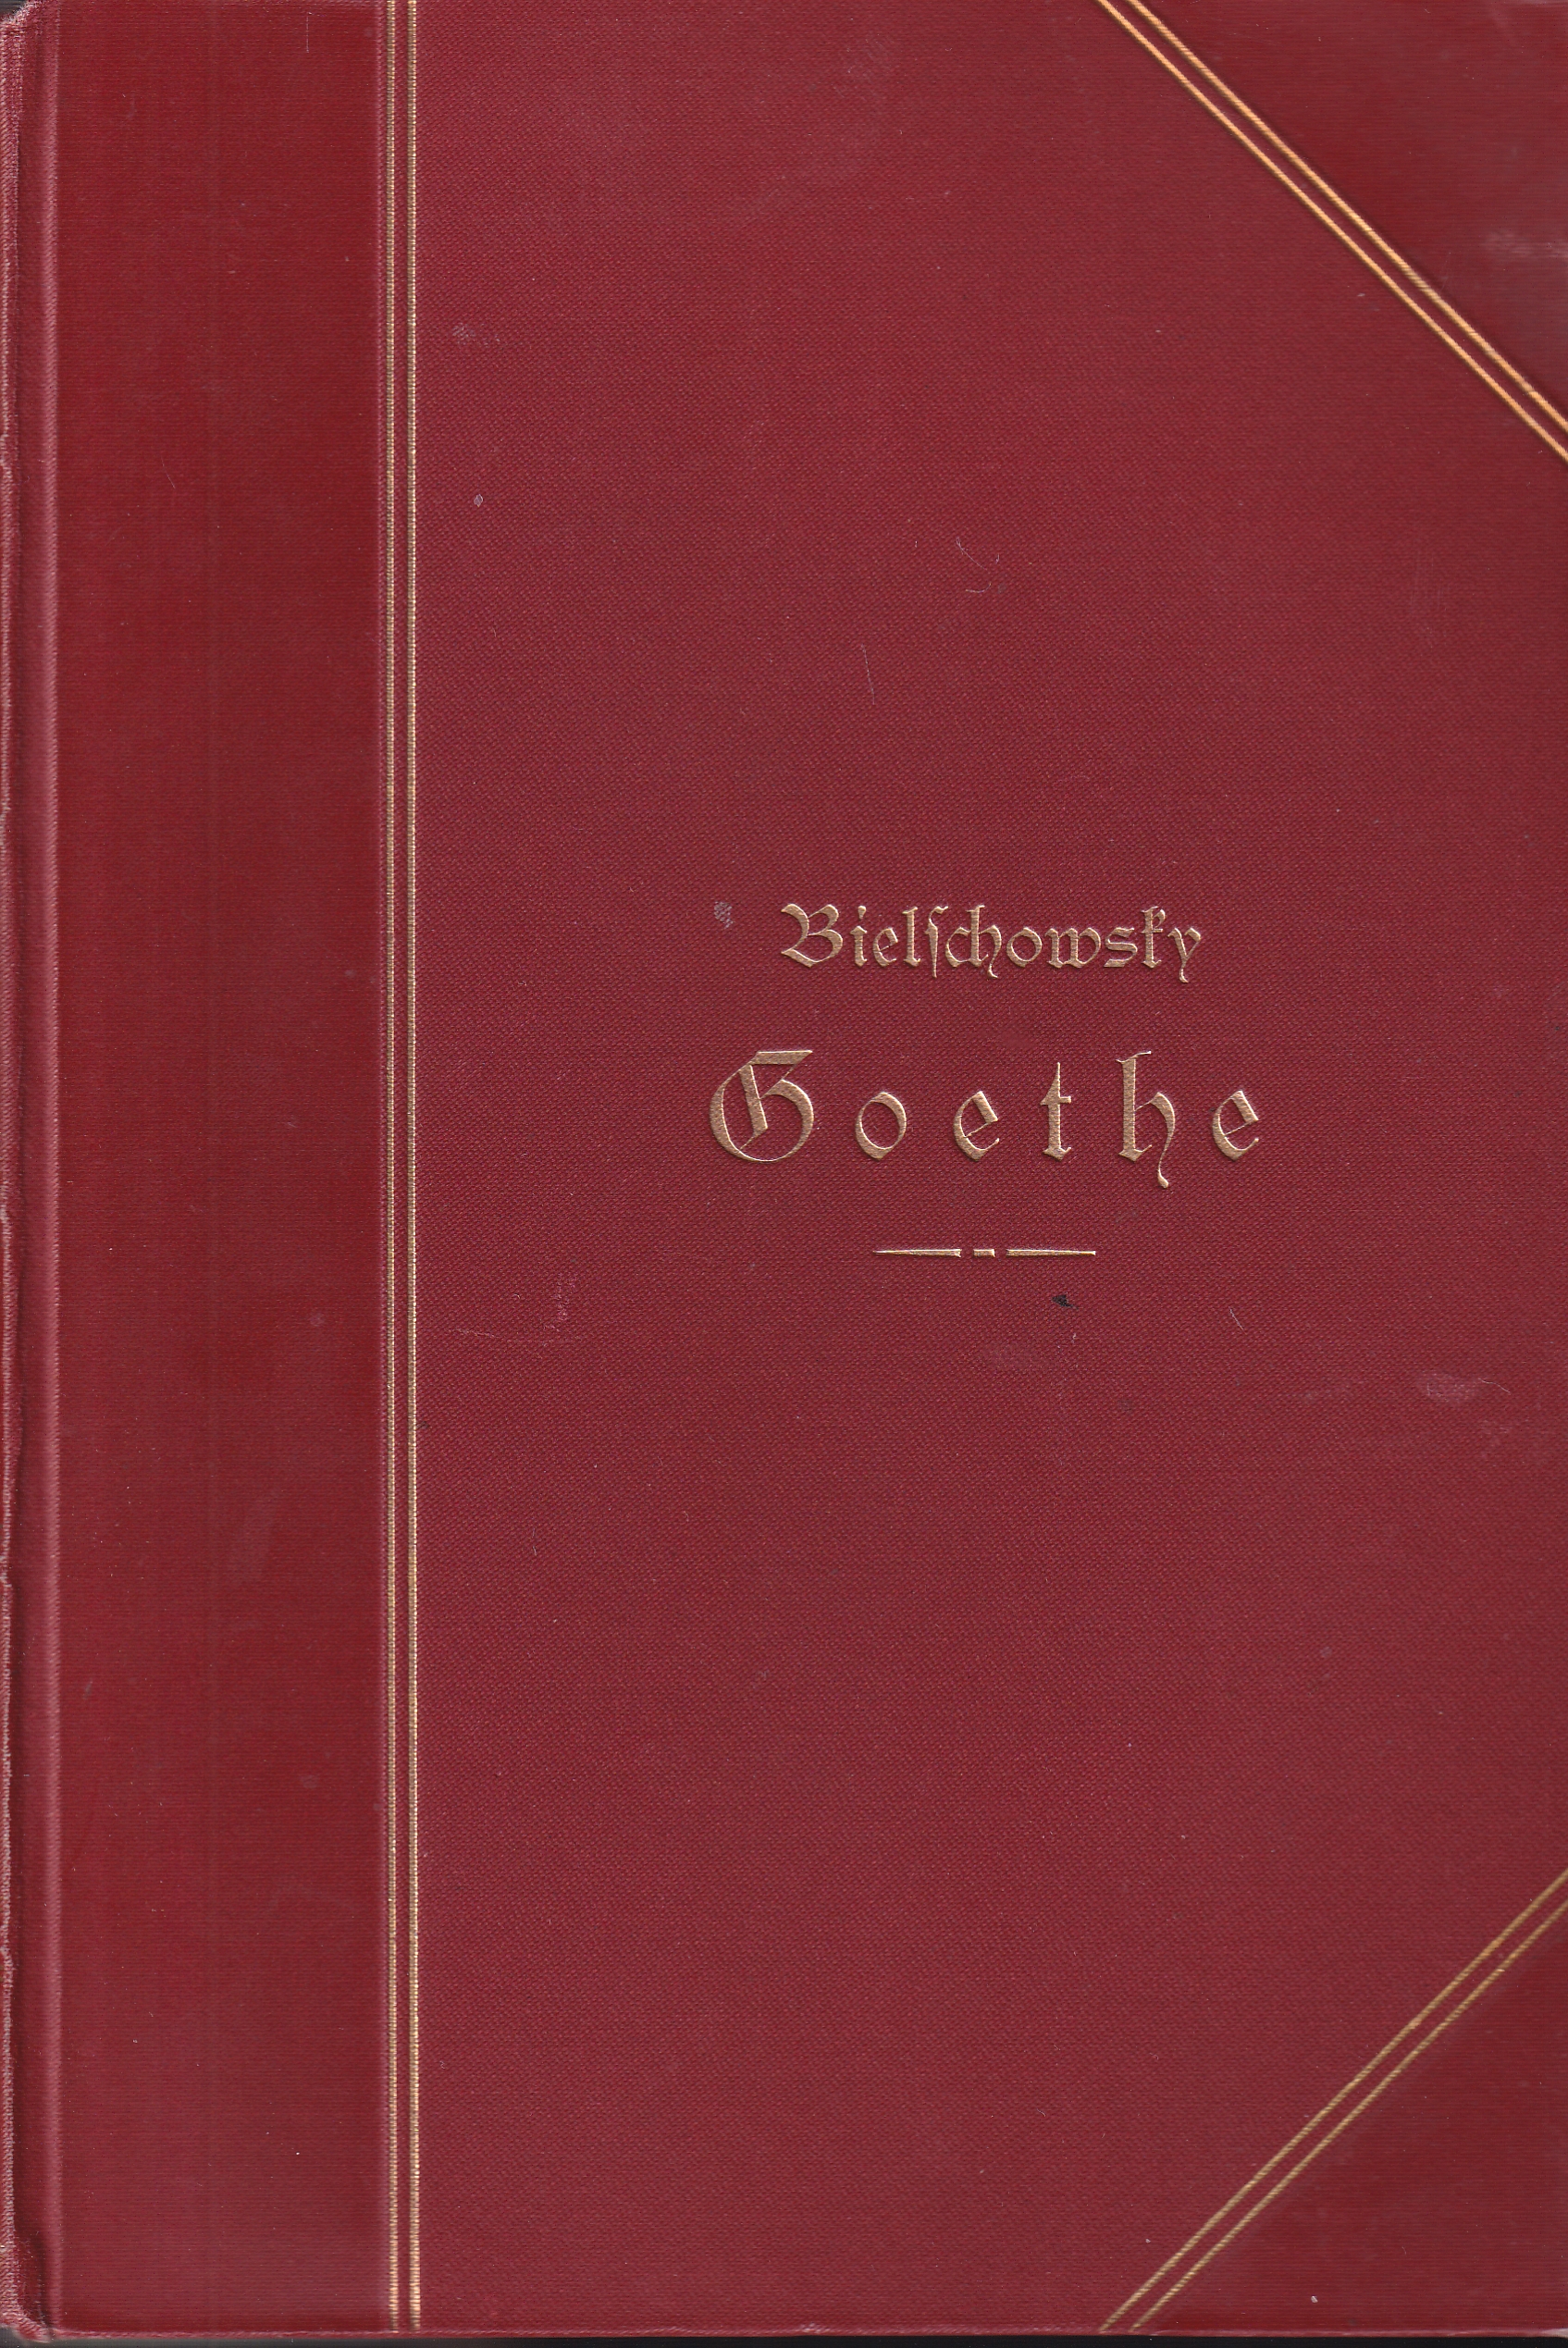 Goethe - Bielschowsky,Albert